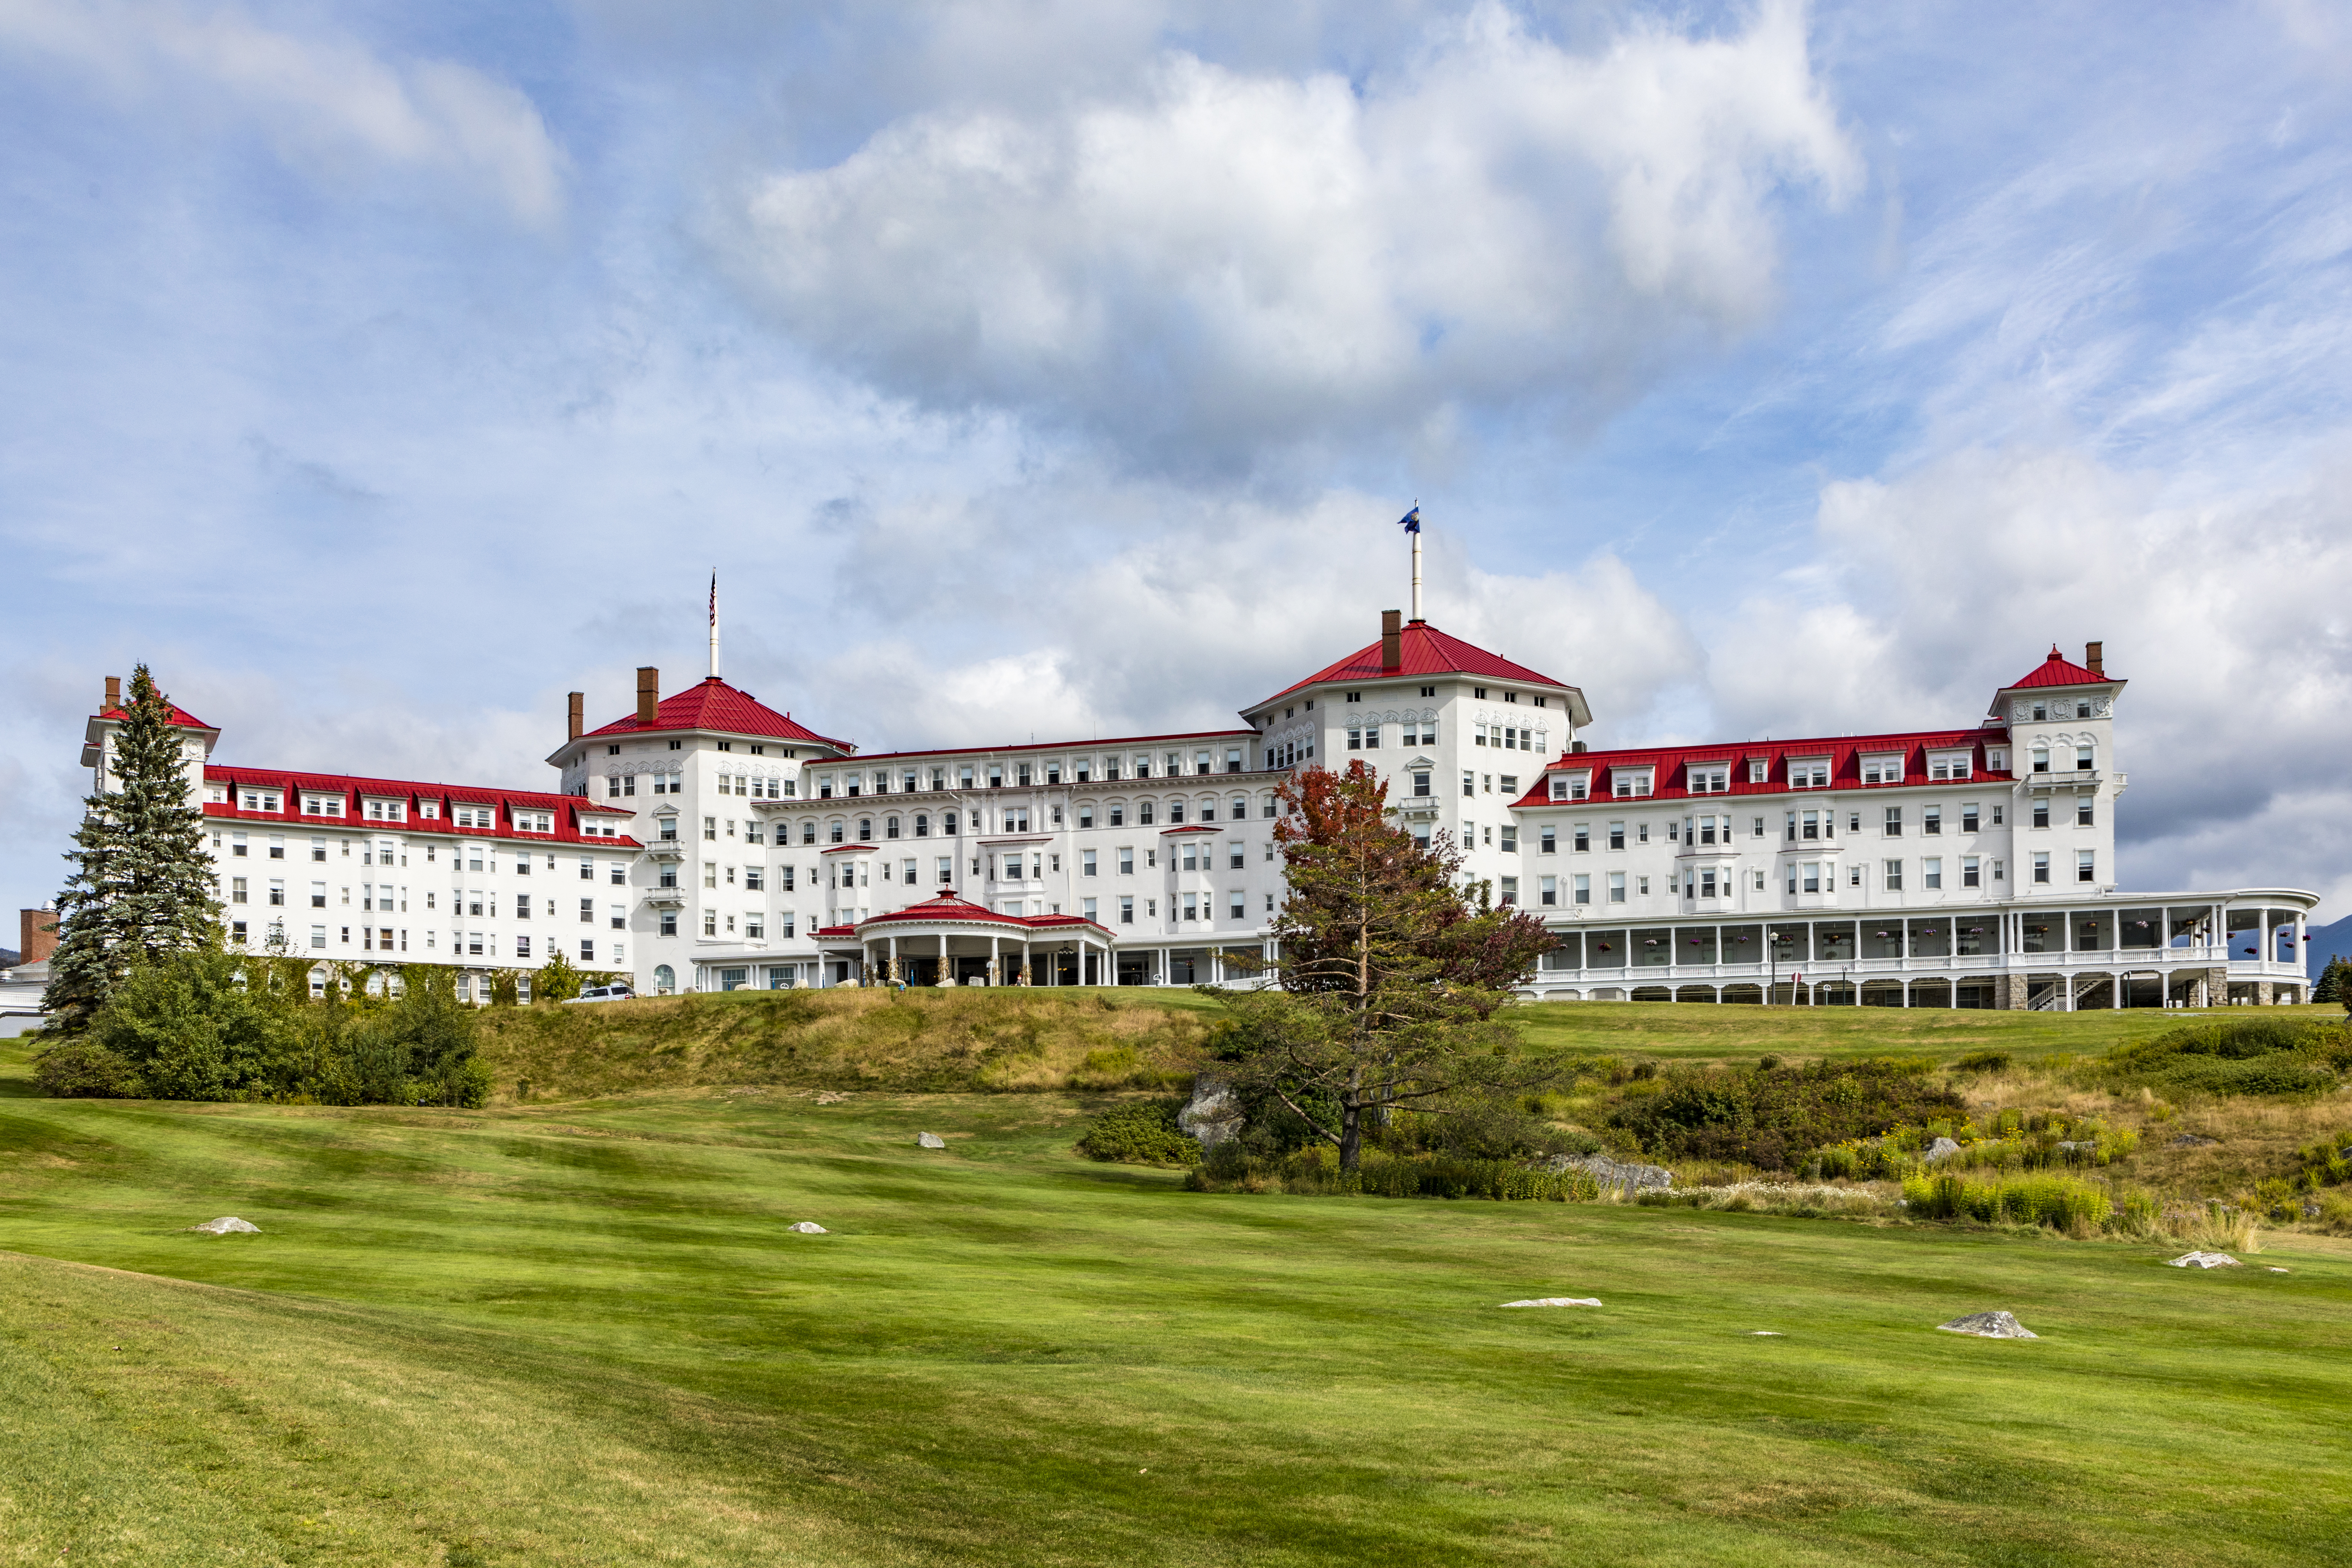 Bretton Woods: Birth of the Modern Dollar